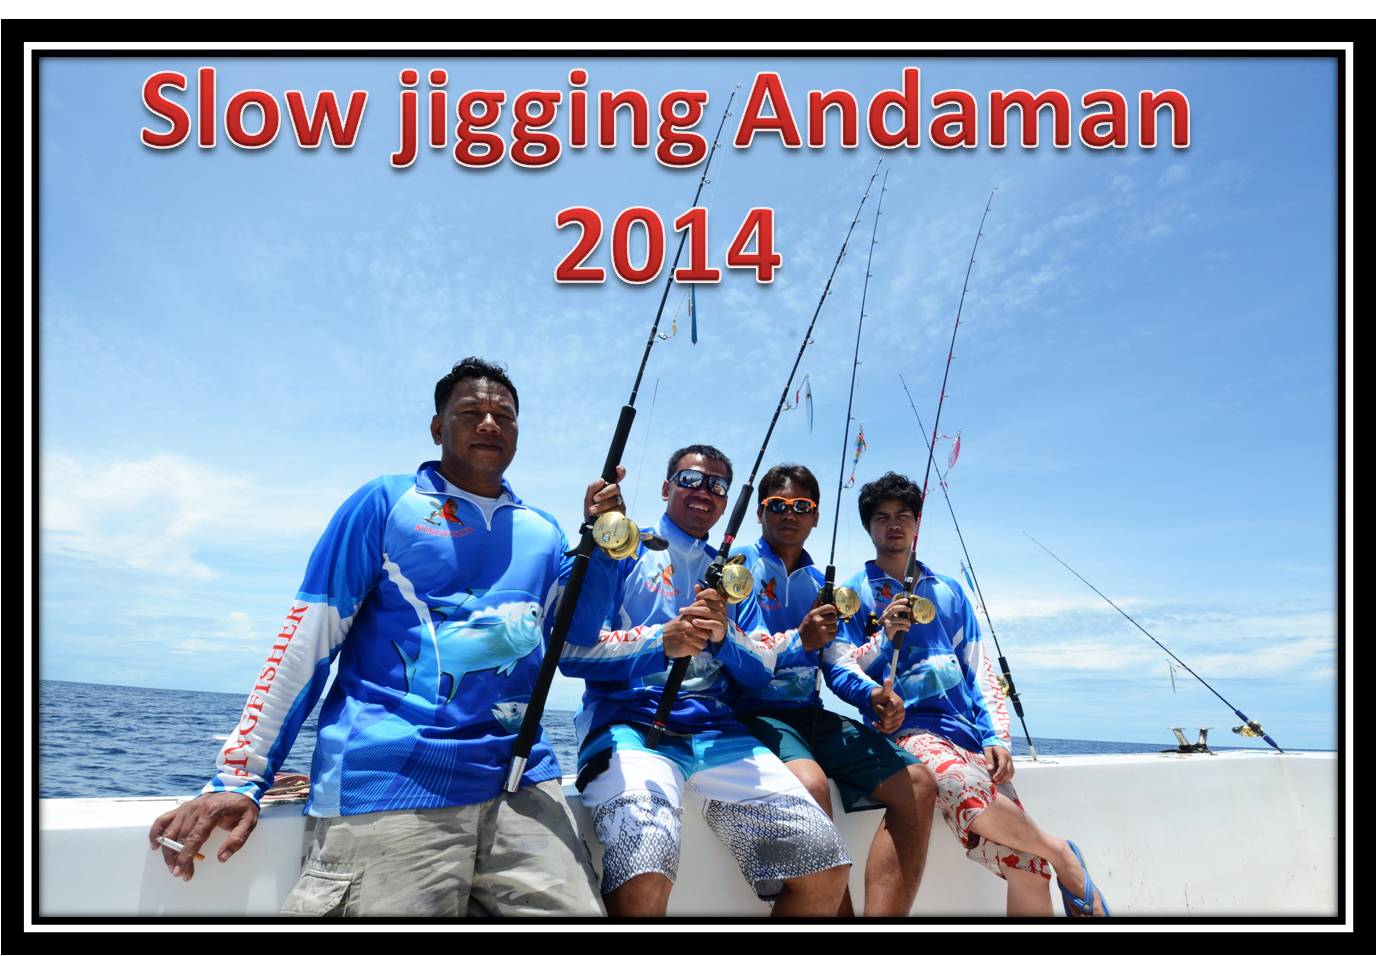 ***Slow jigging Andaman 2014***